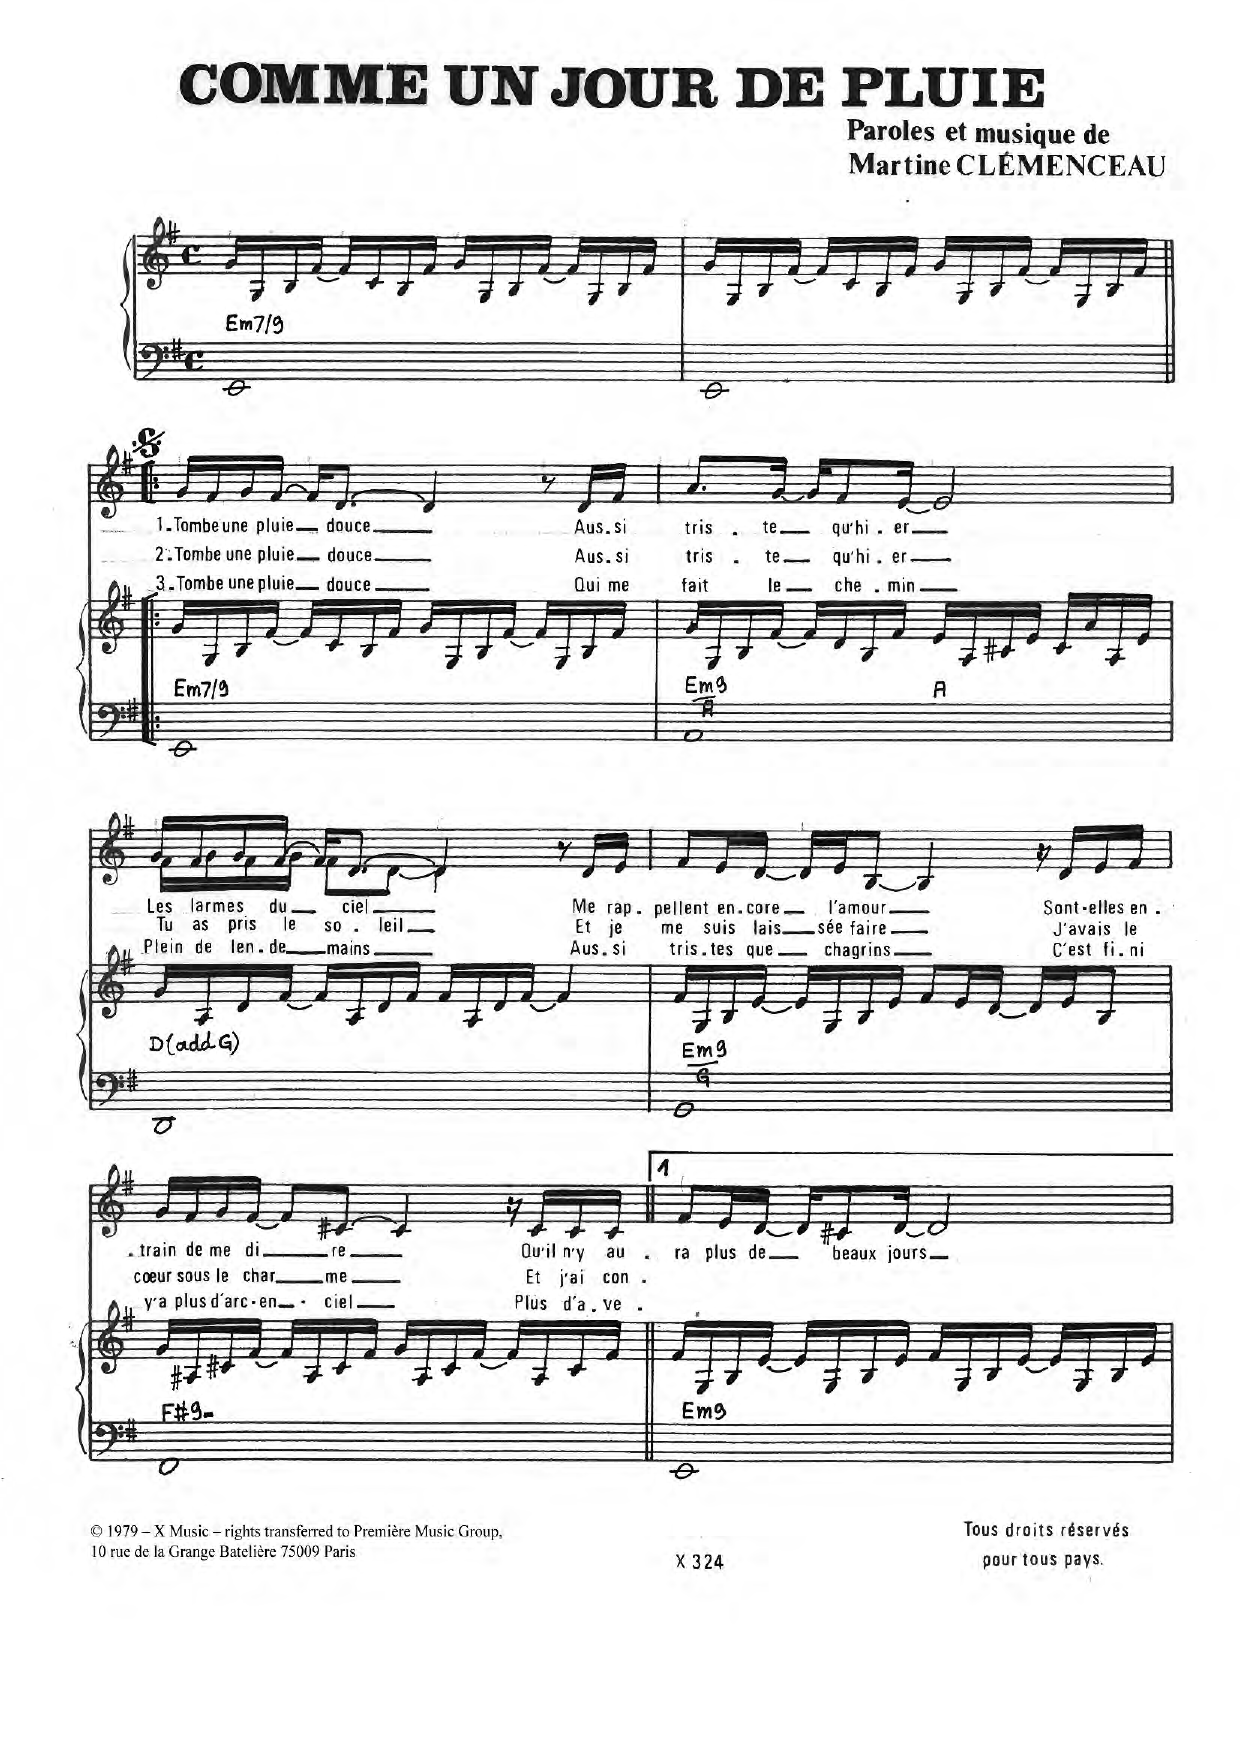 Martine Clemenceau Comme Un Jour De Pluie Sheet Music Notes & Chords for Piano & Vocal - Download or Print PDF